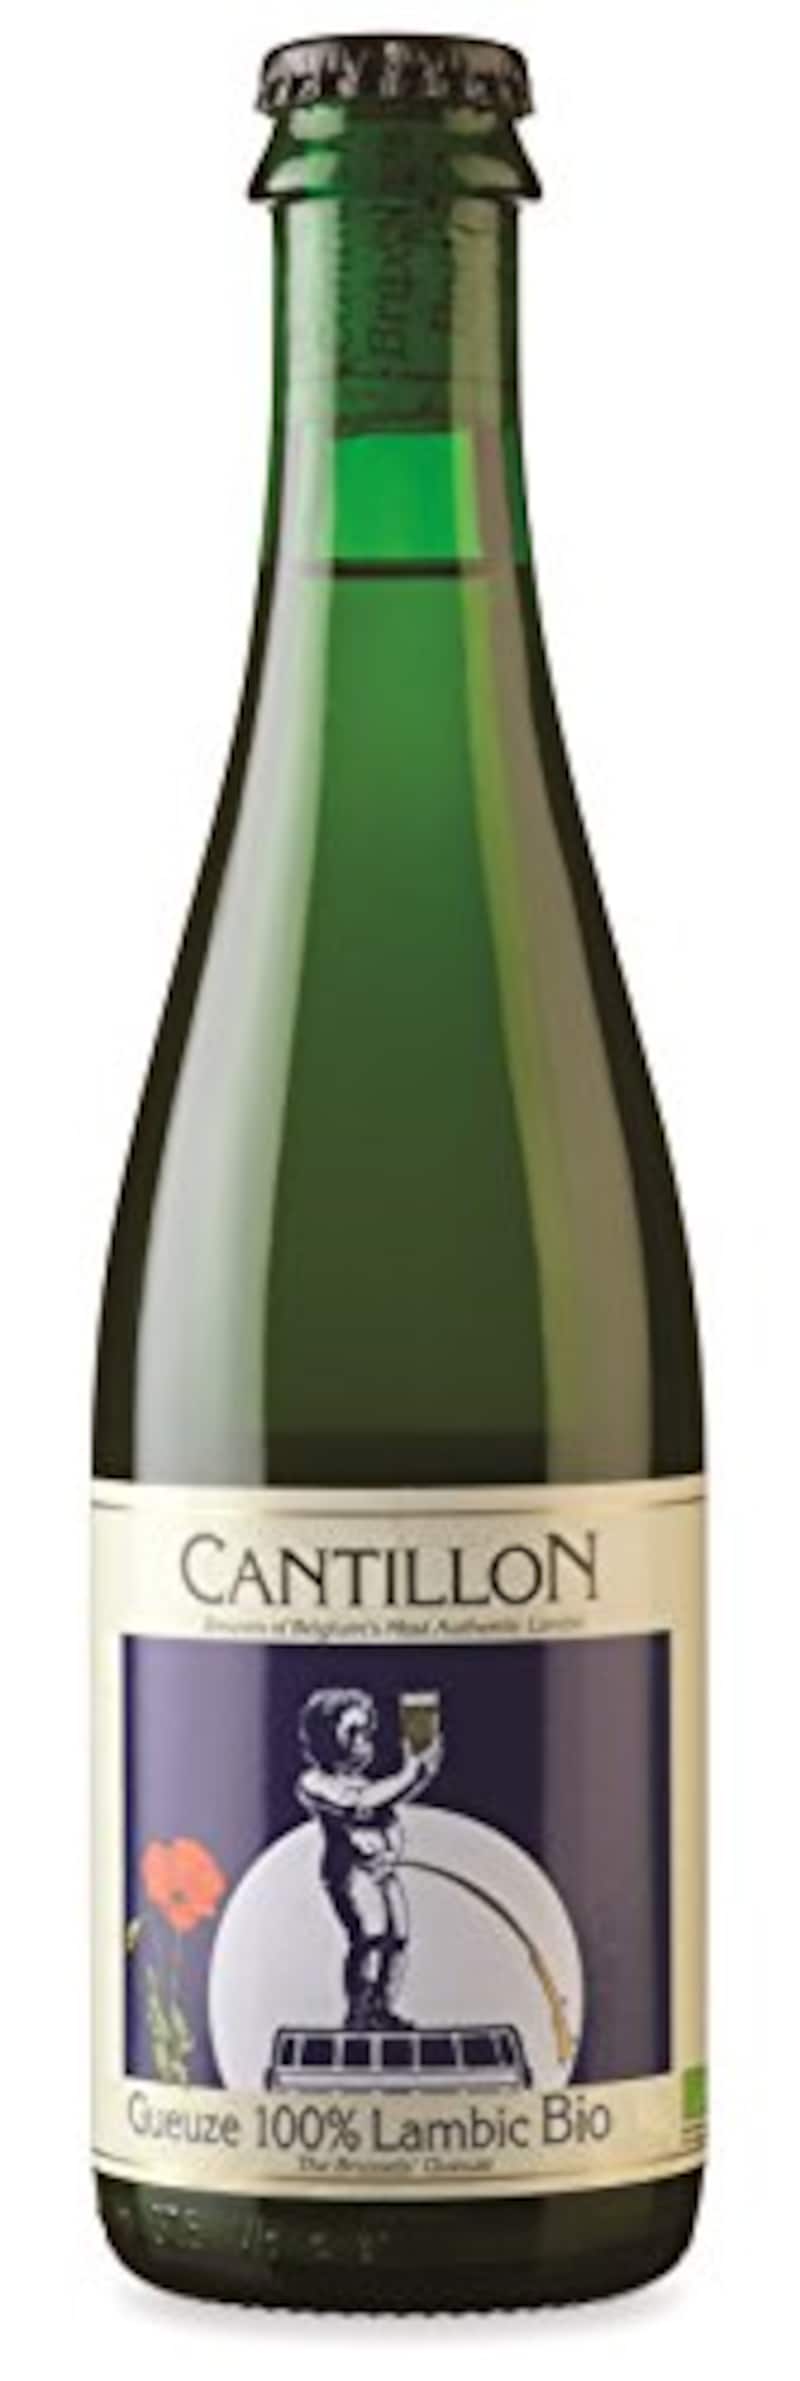 Cantillon,カンティヨン・グース